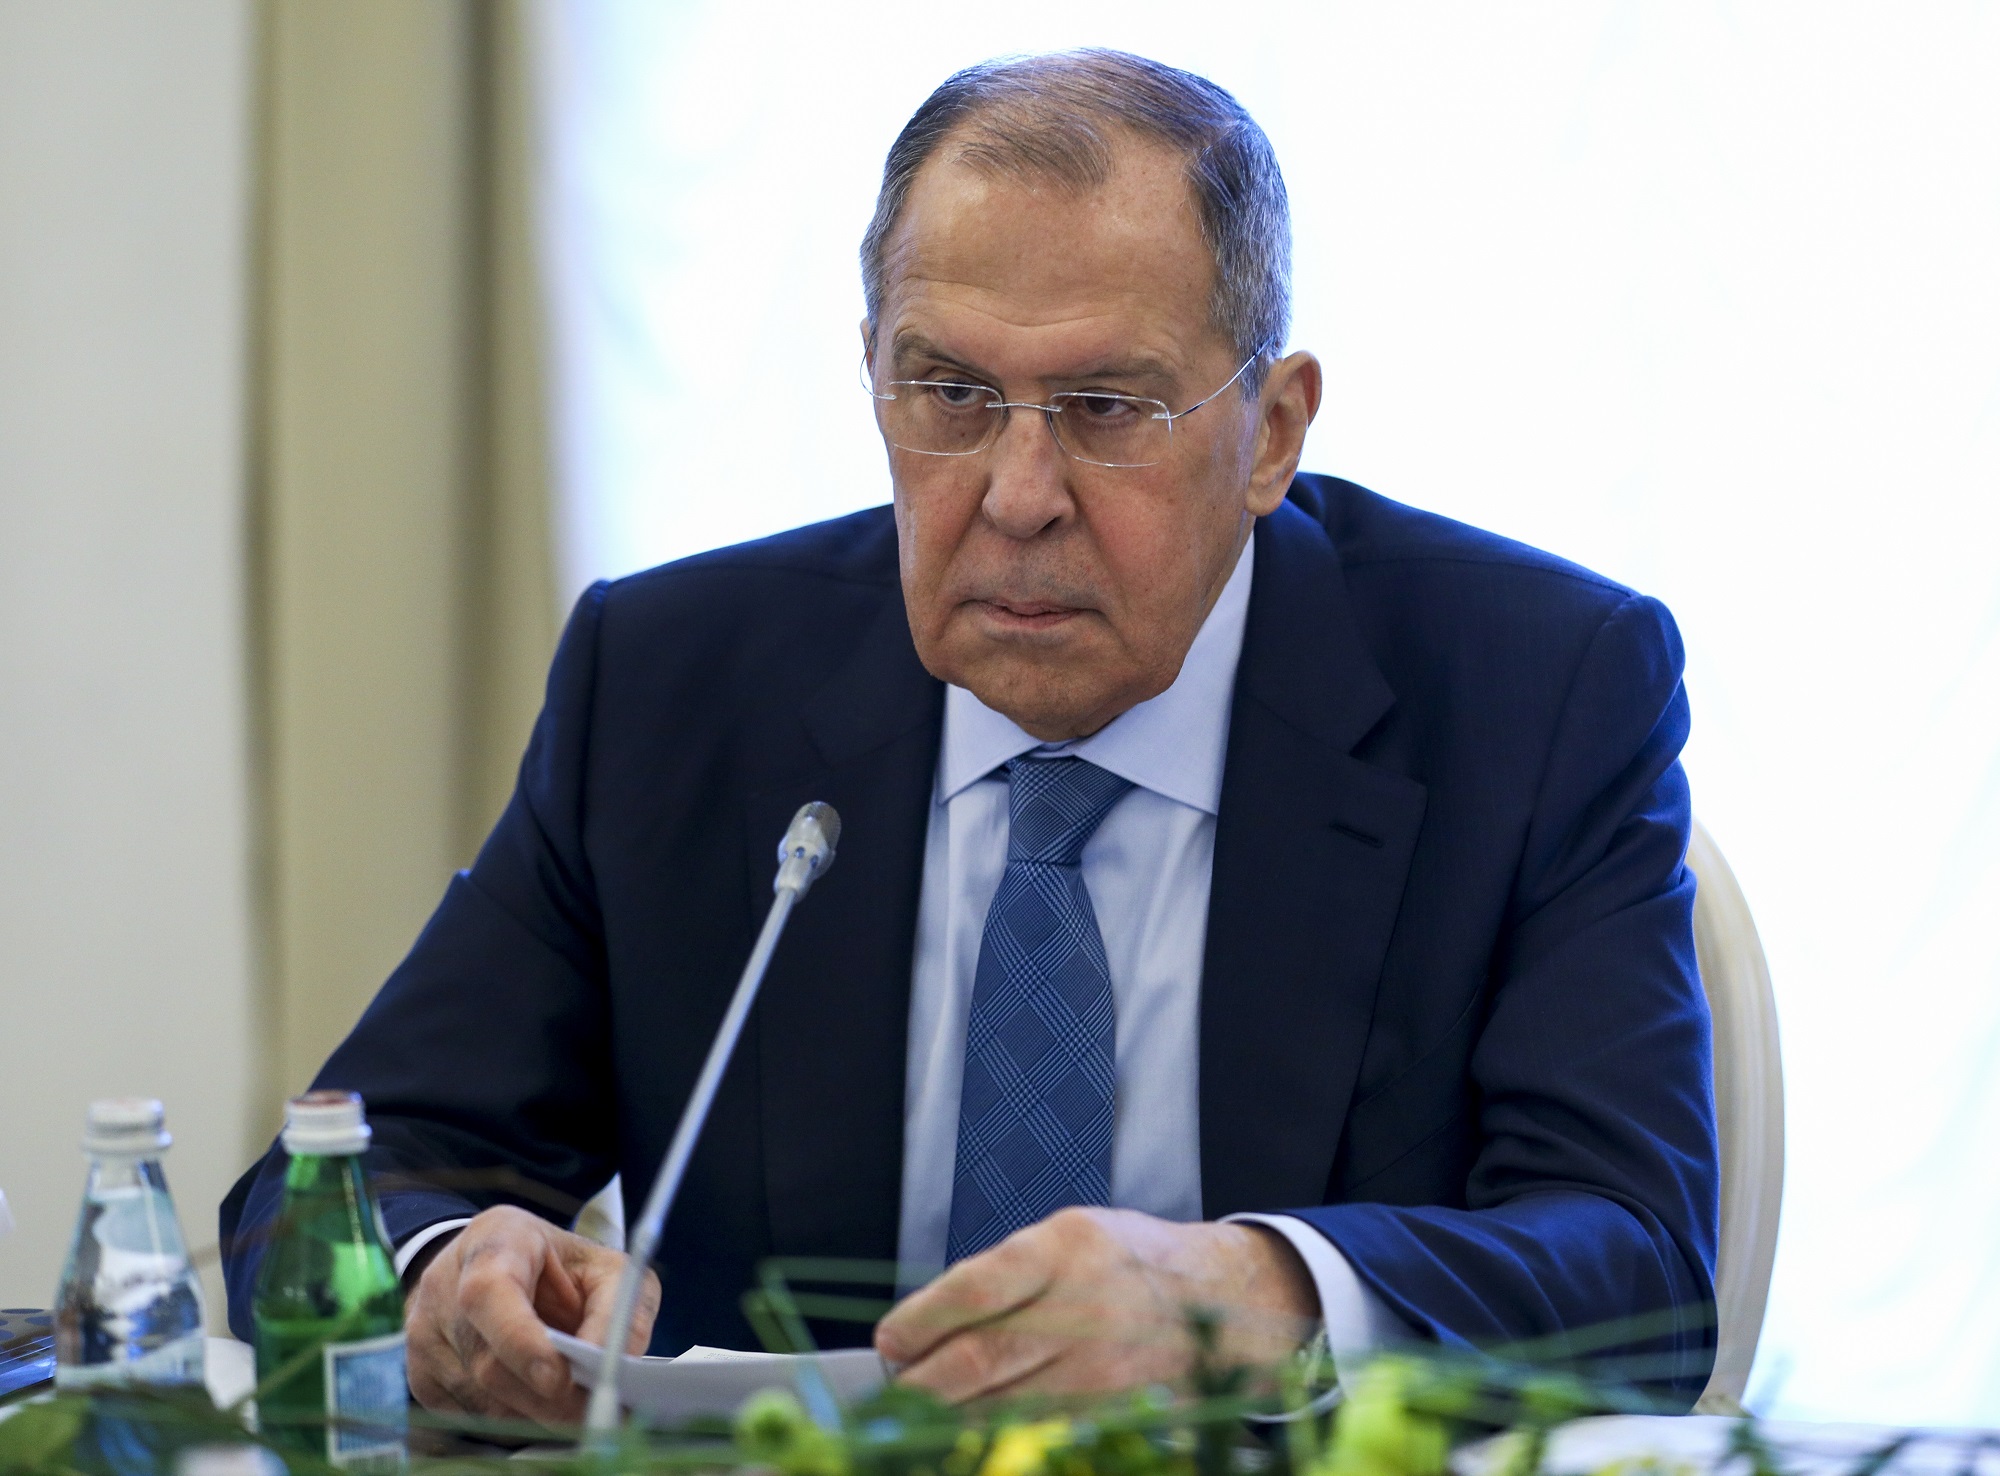 Λαβρόφ: «Οι διαπραγματεύσεις με τον Ζελένσκι είναι αδύνατες -Η Δύση θέλει οριστική λύση στο ρωσικό ζήτημα»